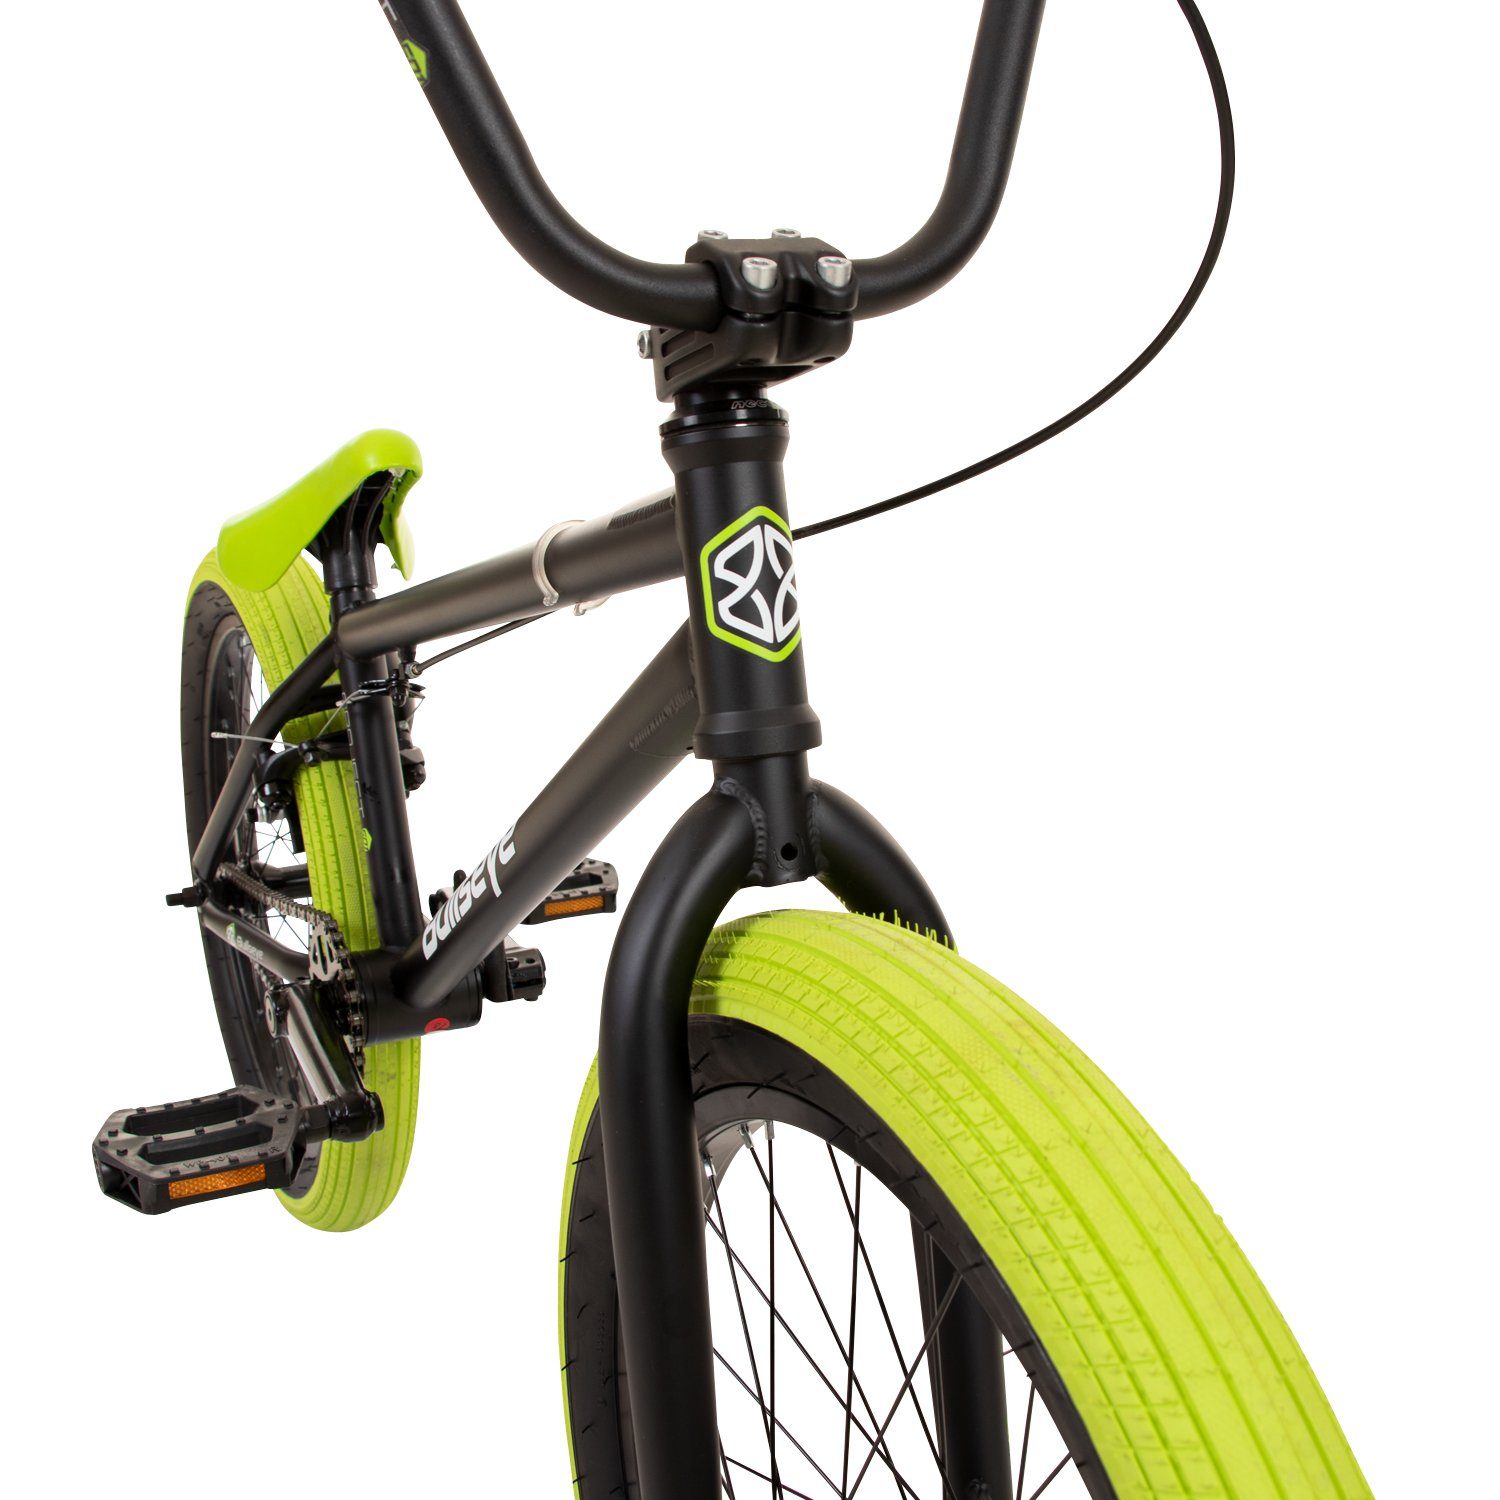 Erwachsene - cm ohne Jugendliche 501, BMX-Rad schwarz/grün mit 1 Gang, BMX 175 unisex 145 Pegs Schaltung, bullseye Fahrrad Project